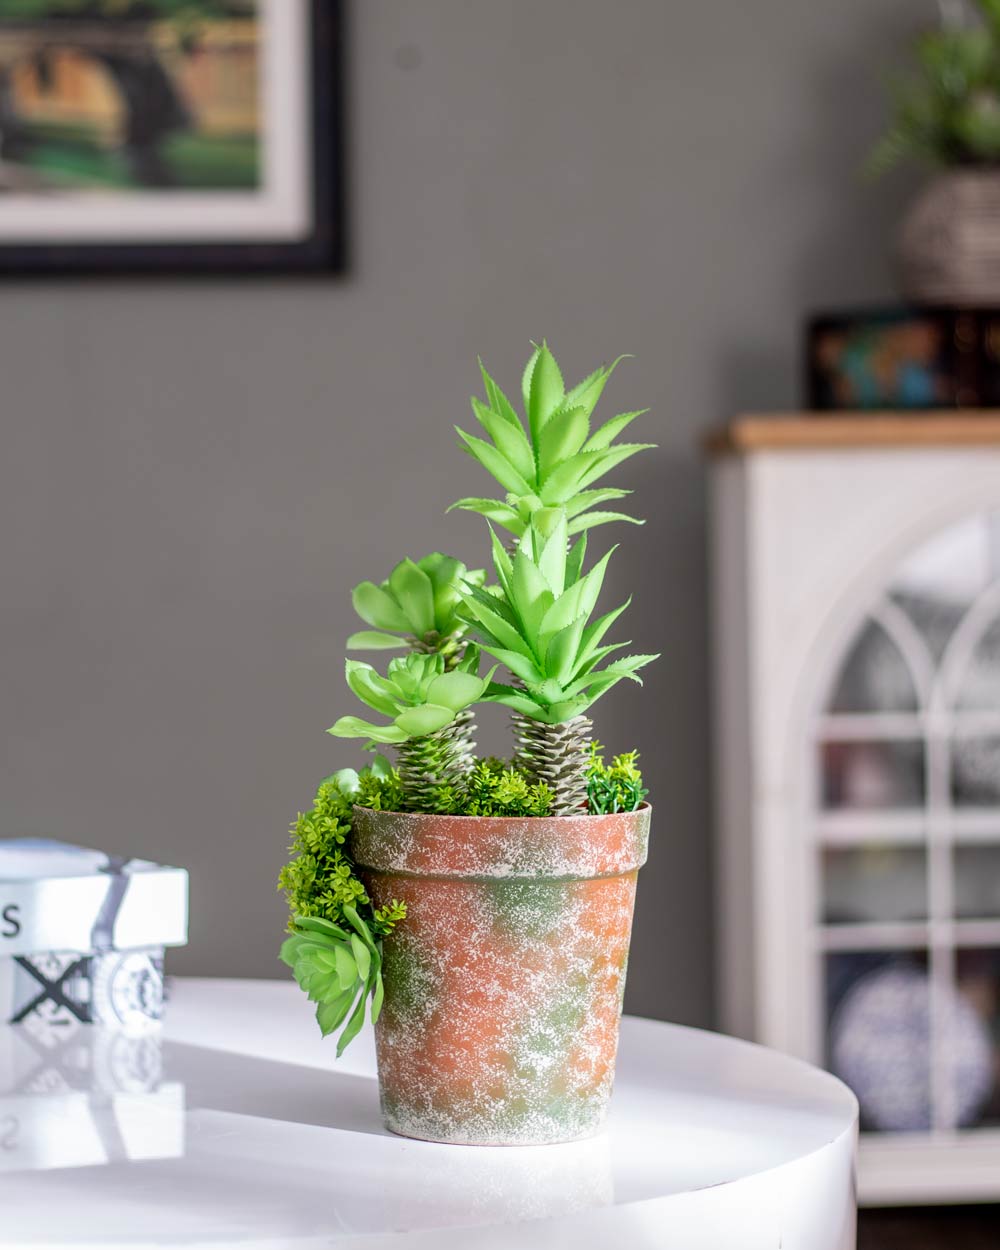 Artificial Succulents Plants With Cement Pot